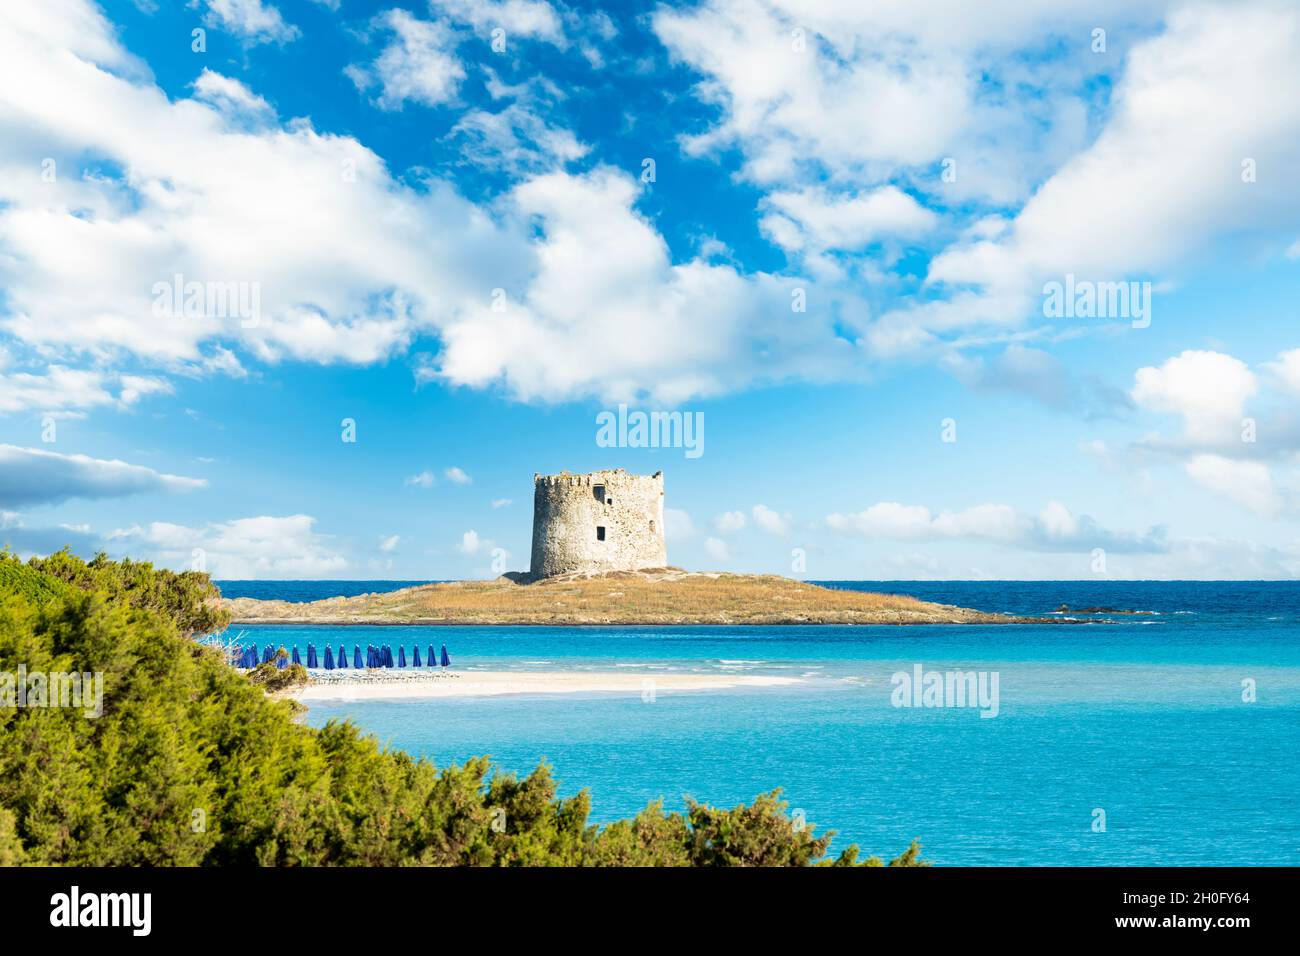 Paesaggio mozzafiato con la Torre Aragonese e la spiaggia di la Pelosa bagnata da una tranquilla acqua turchese. Spiaggia la Pelosa, Stintino, Sardegna nord-occidentale. Foto Stock